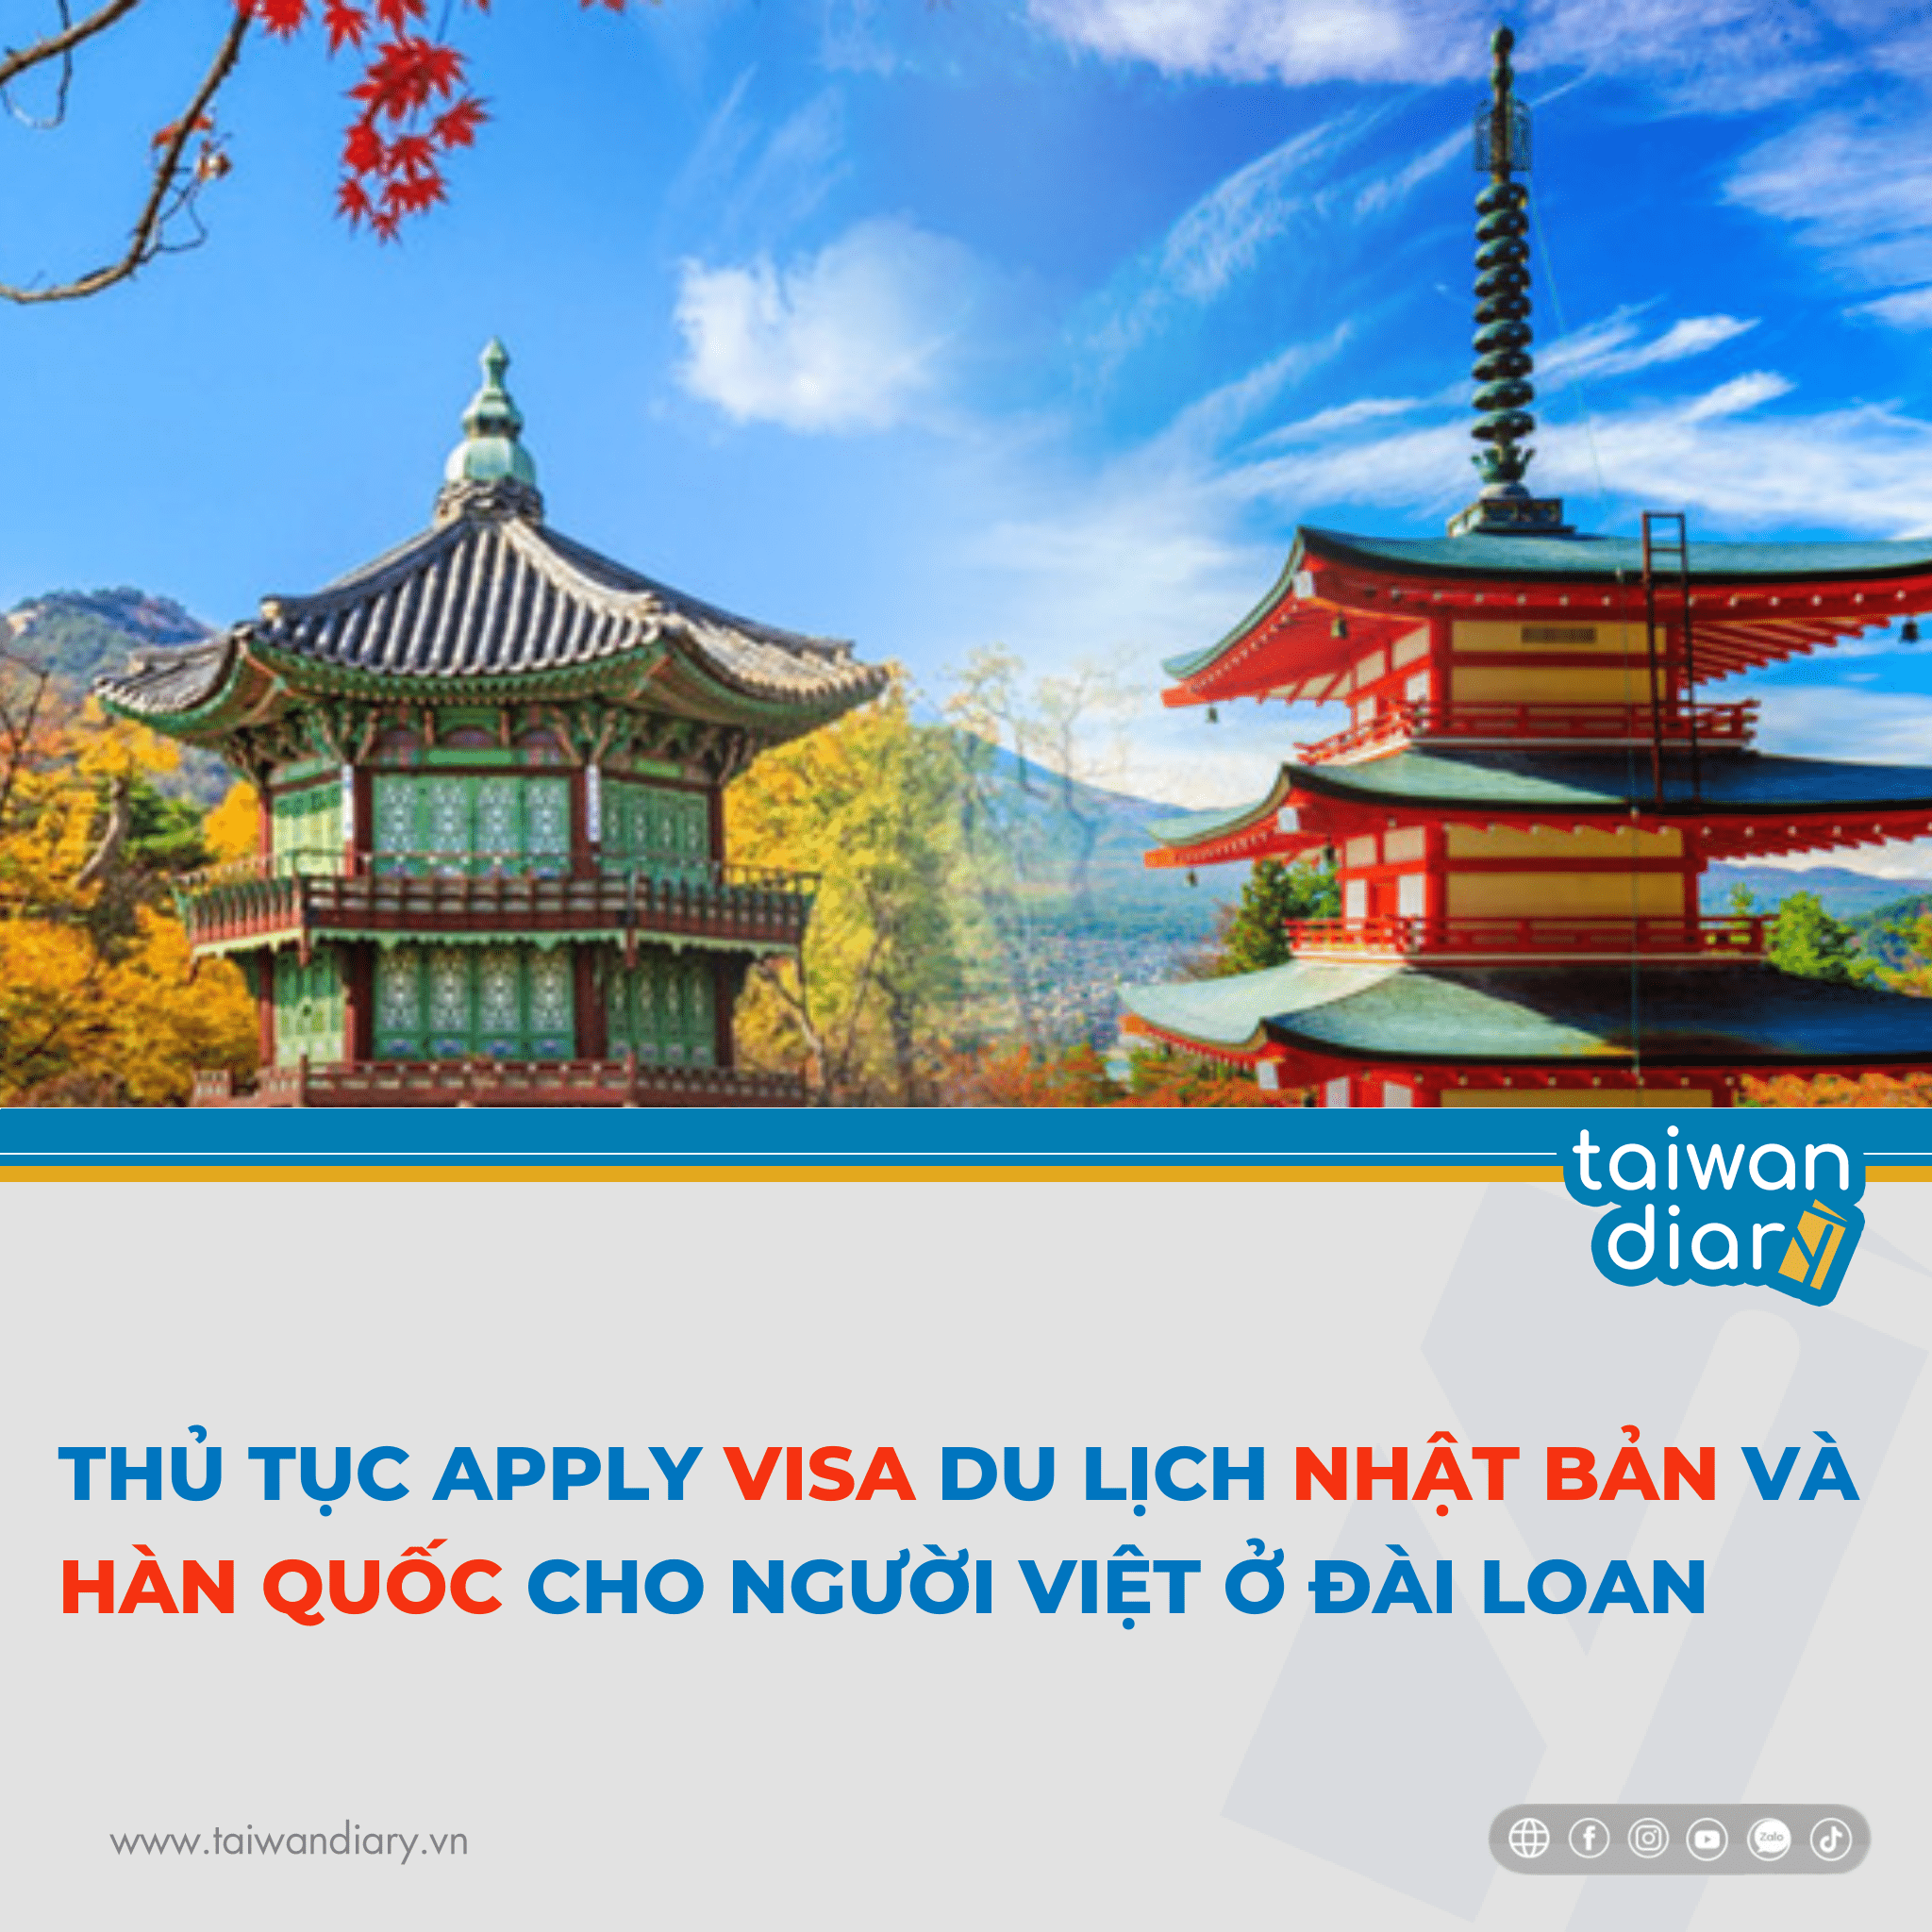 Thủ tục xin Visa du lịch Nhật Bản và Hàn Quốc dành cho người Việt ở Đài Loan